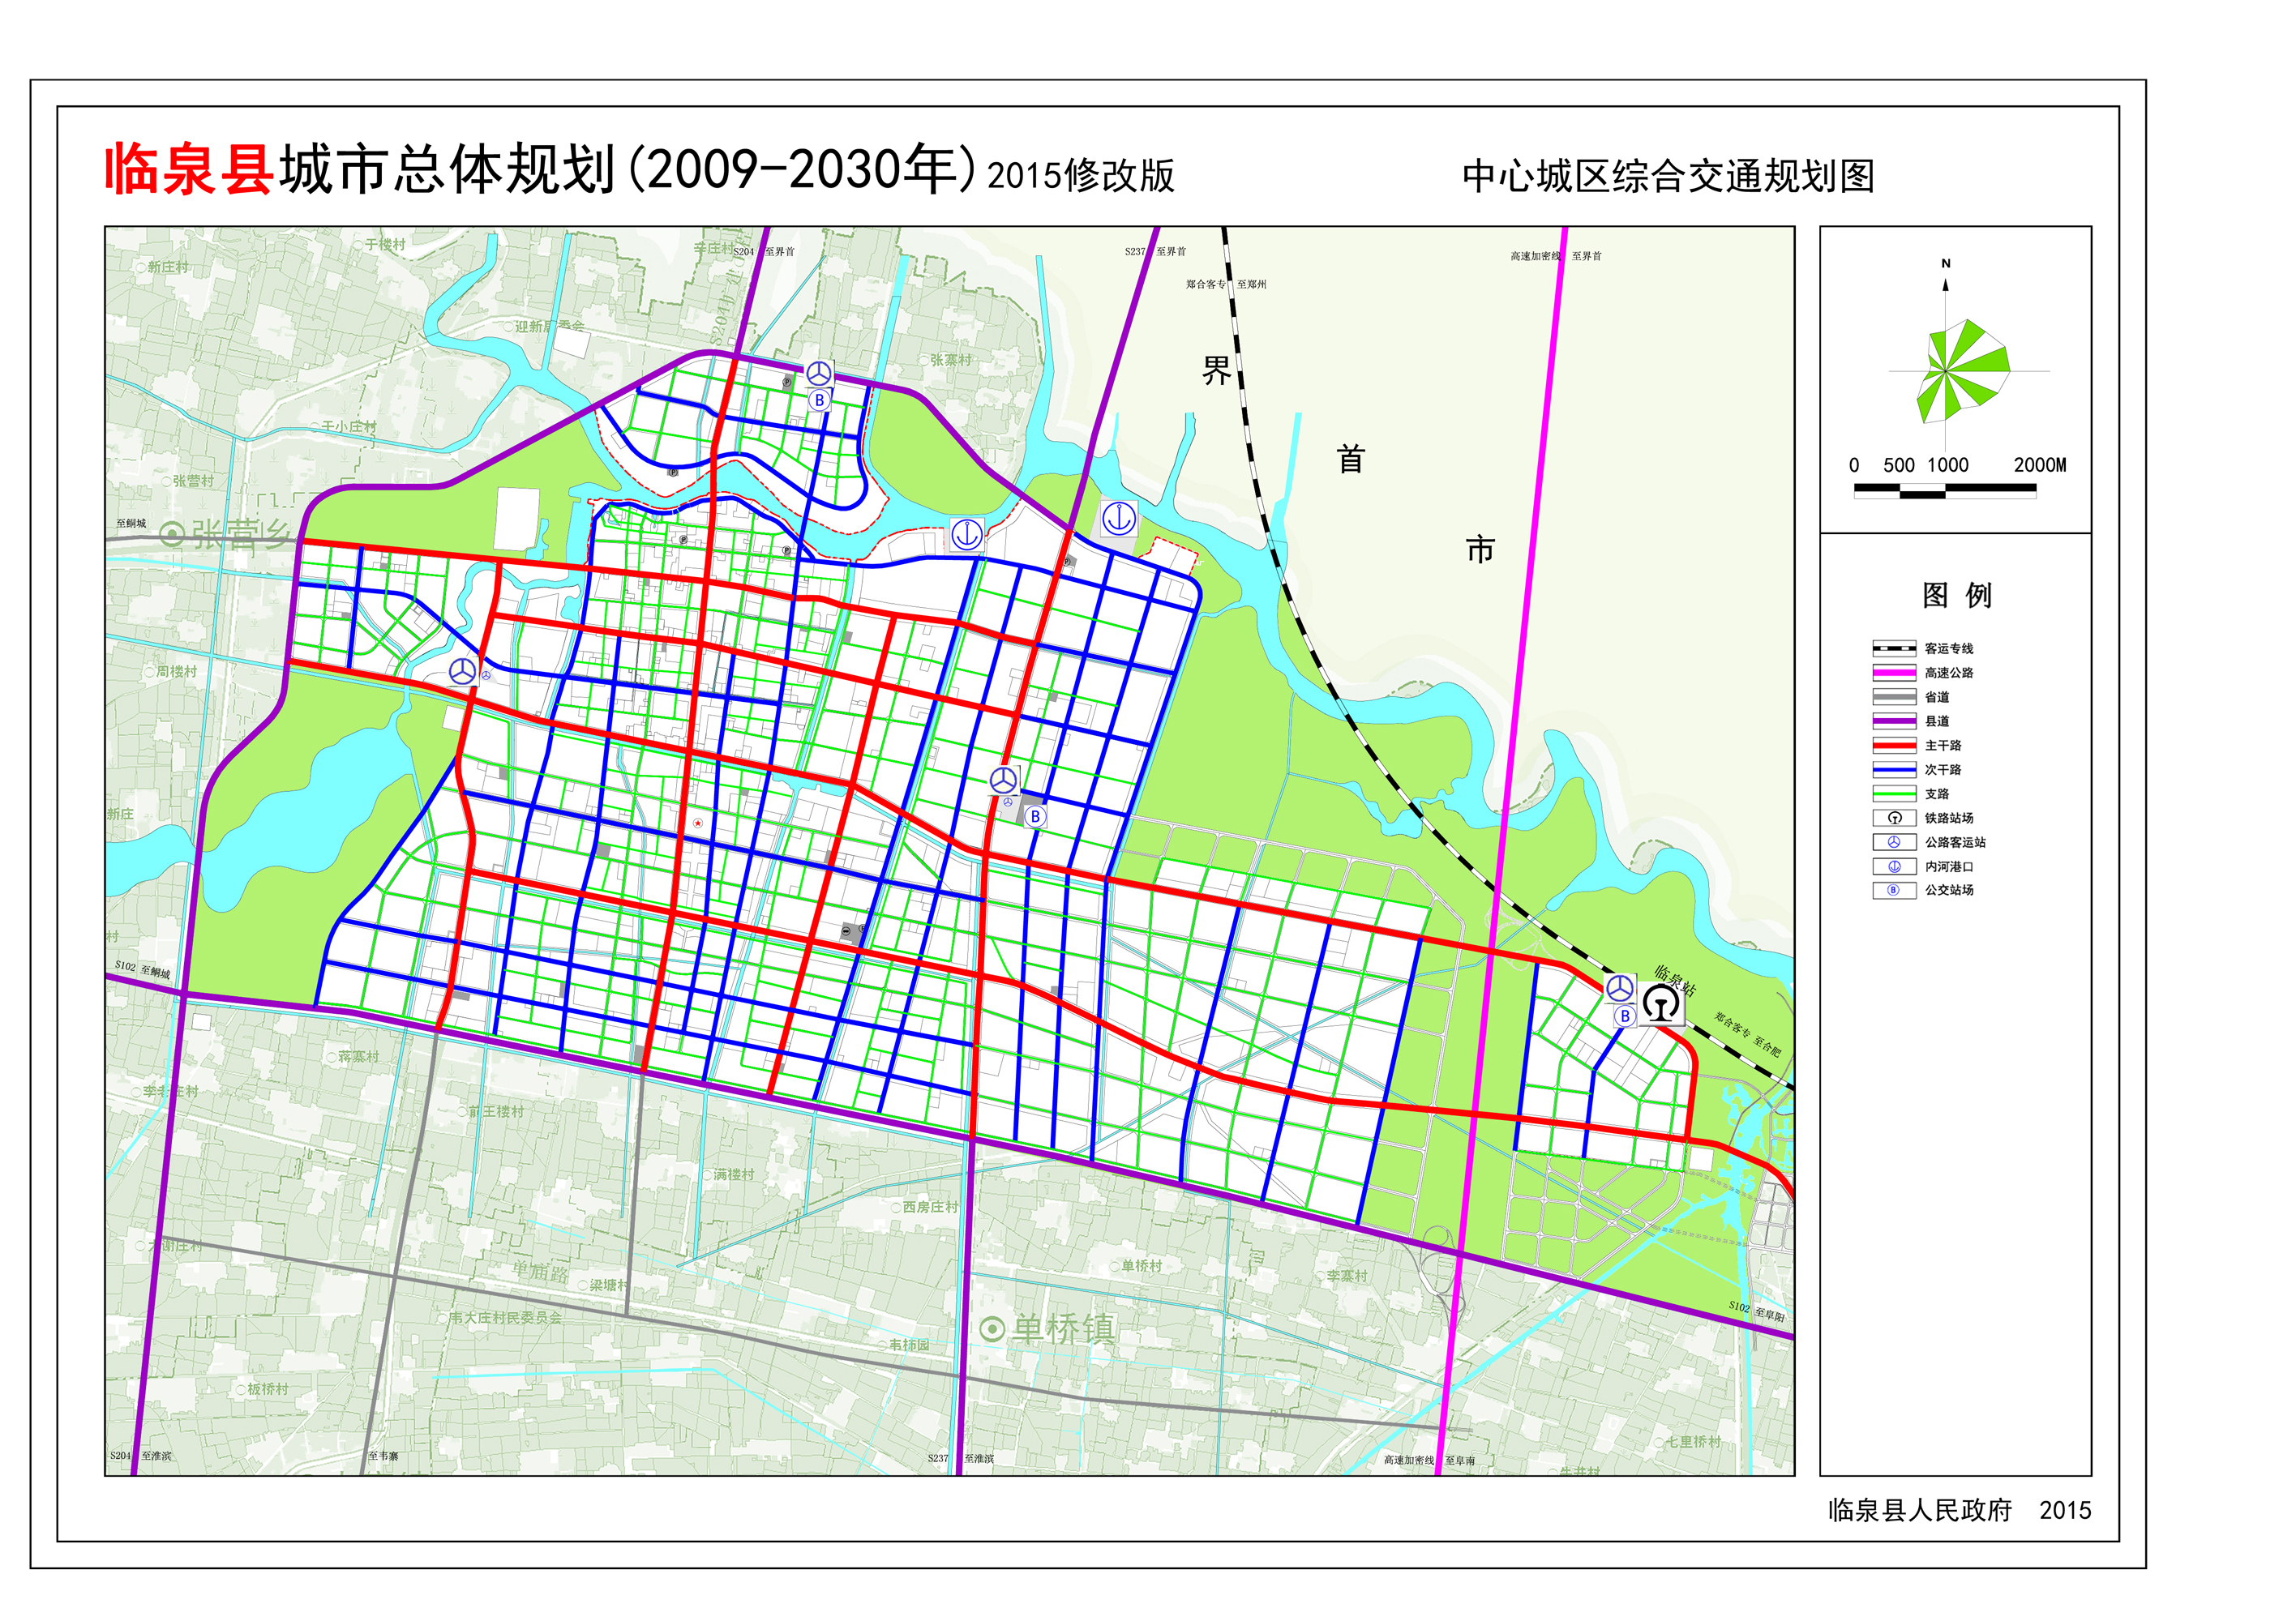 临泉县城市总体规划20092030年2015修改版征求公众意见